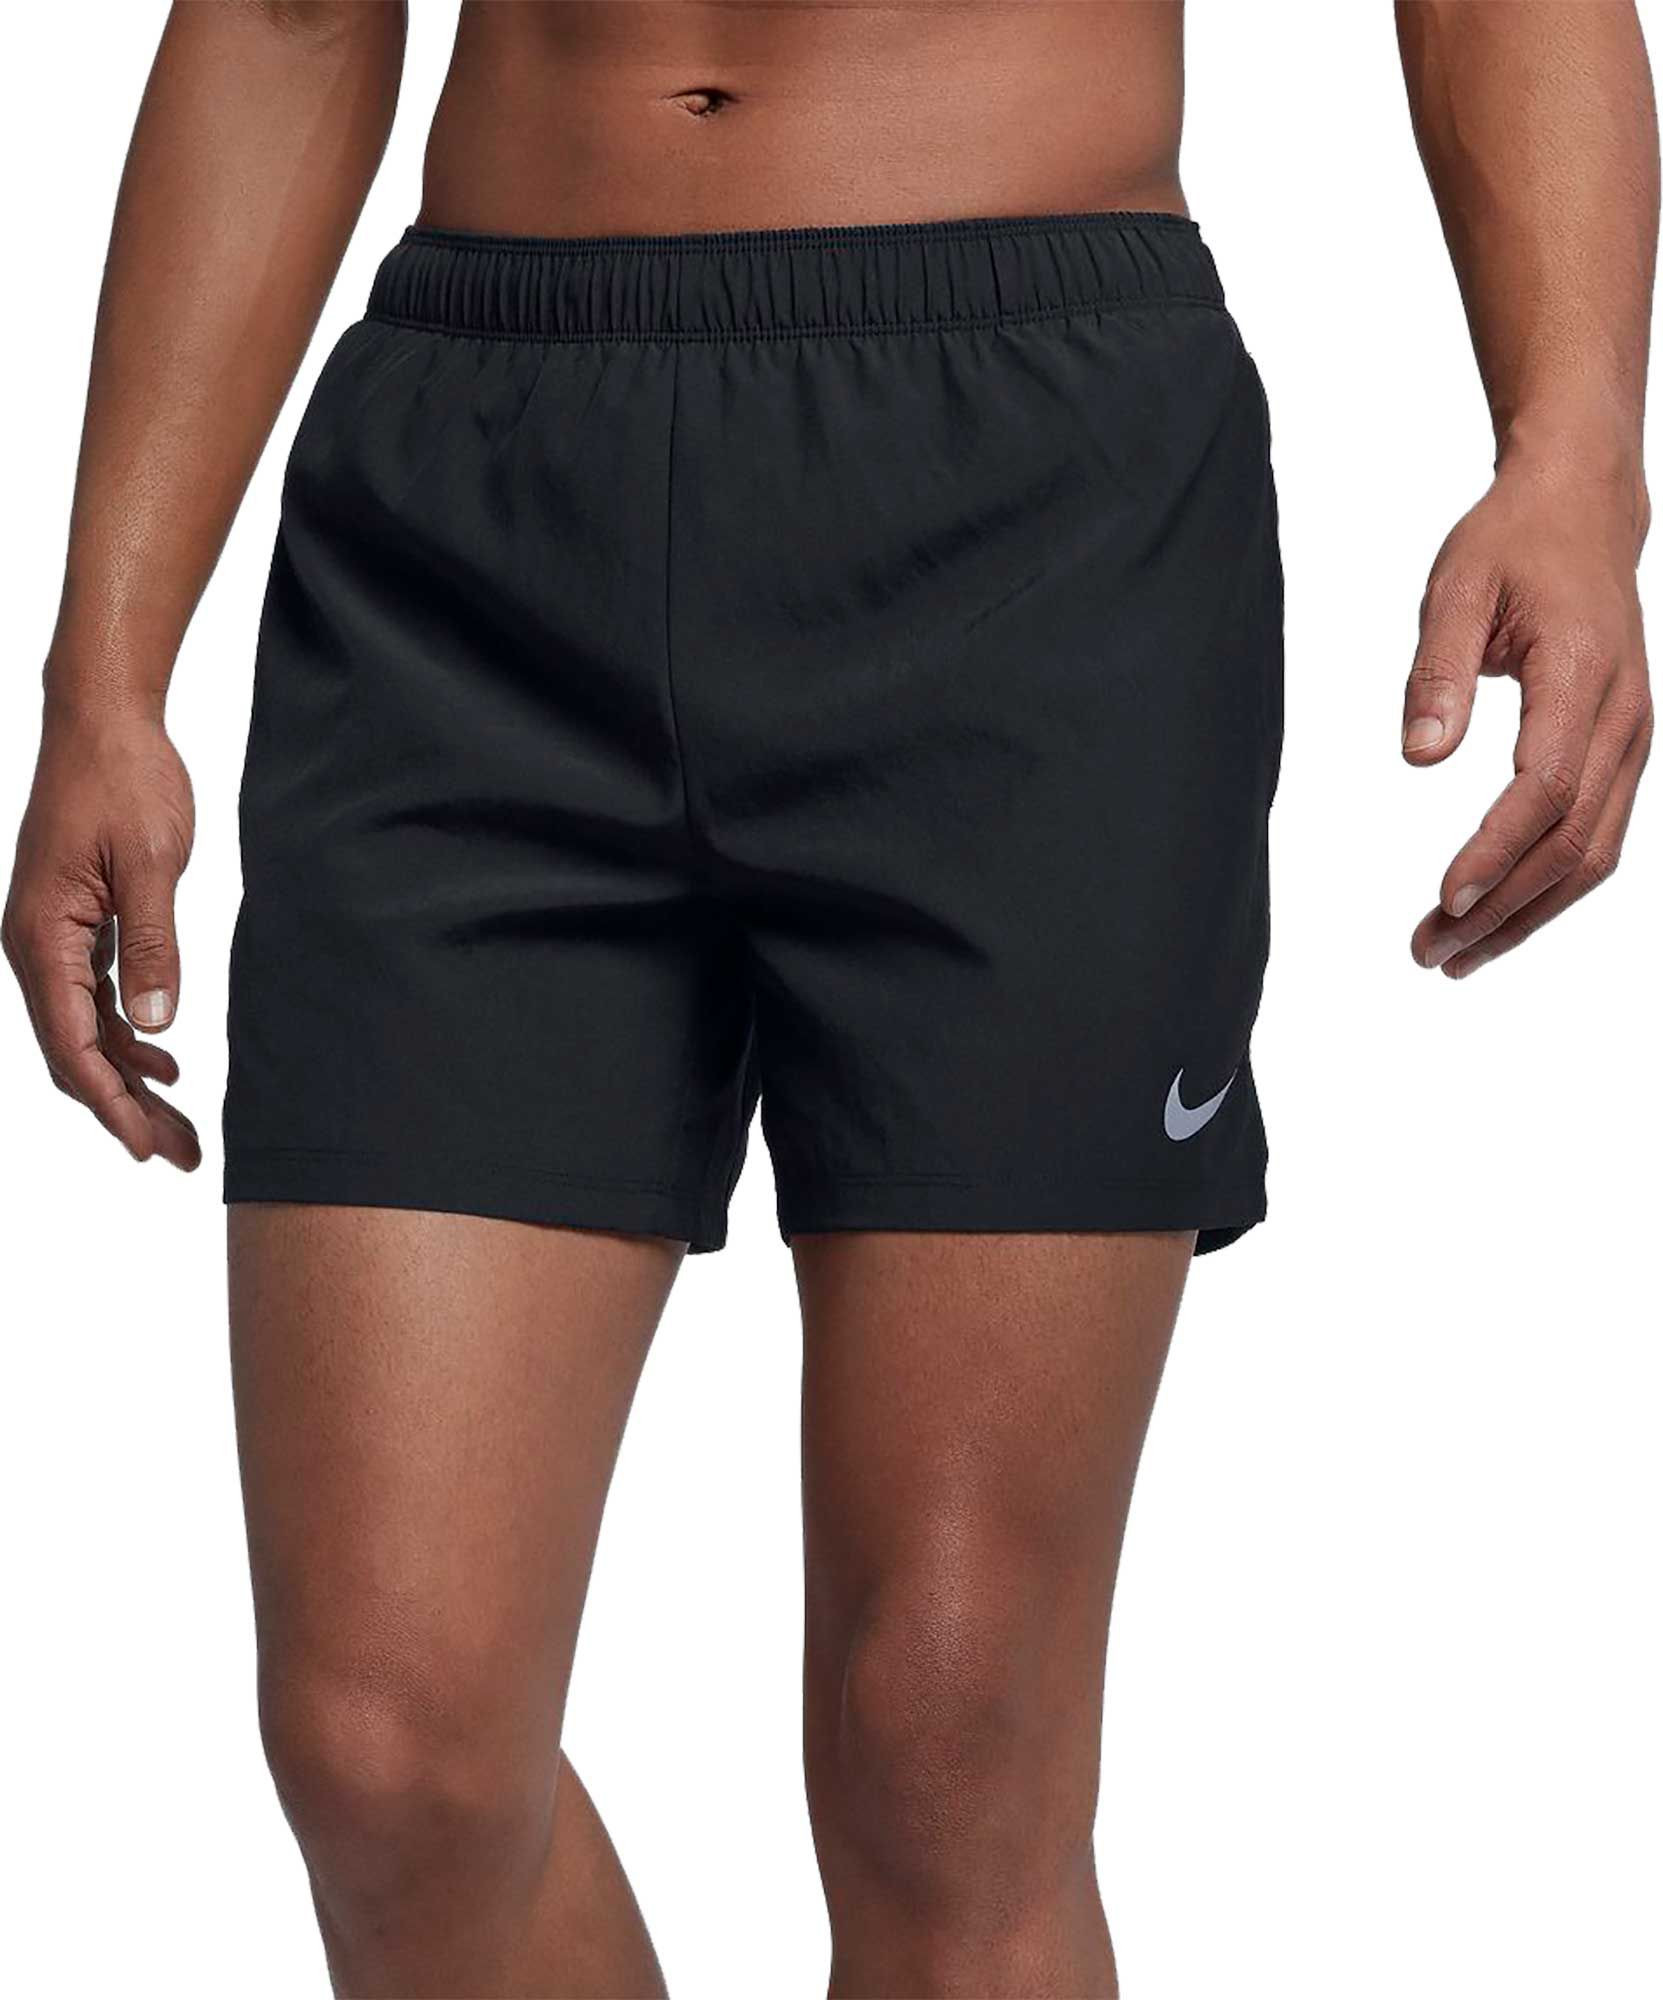 running shorts dicks